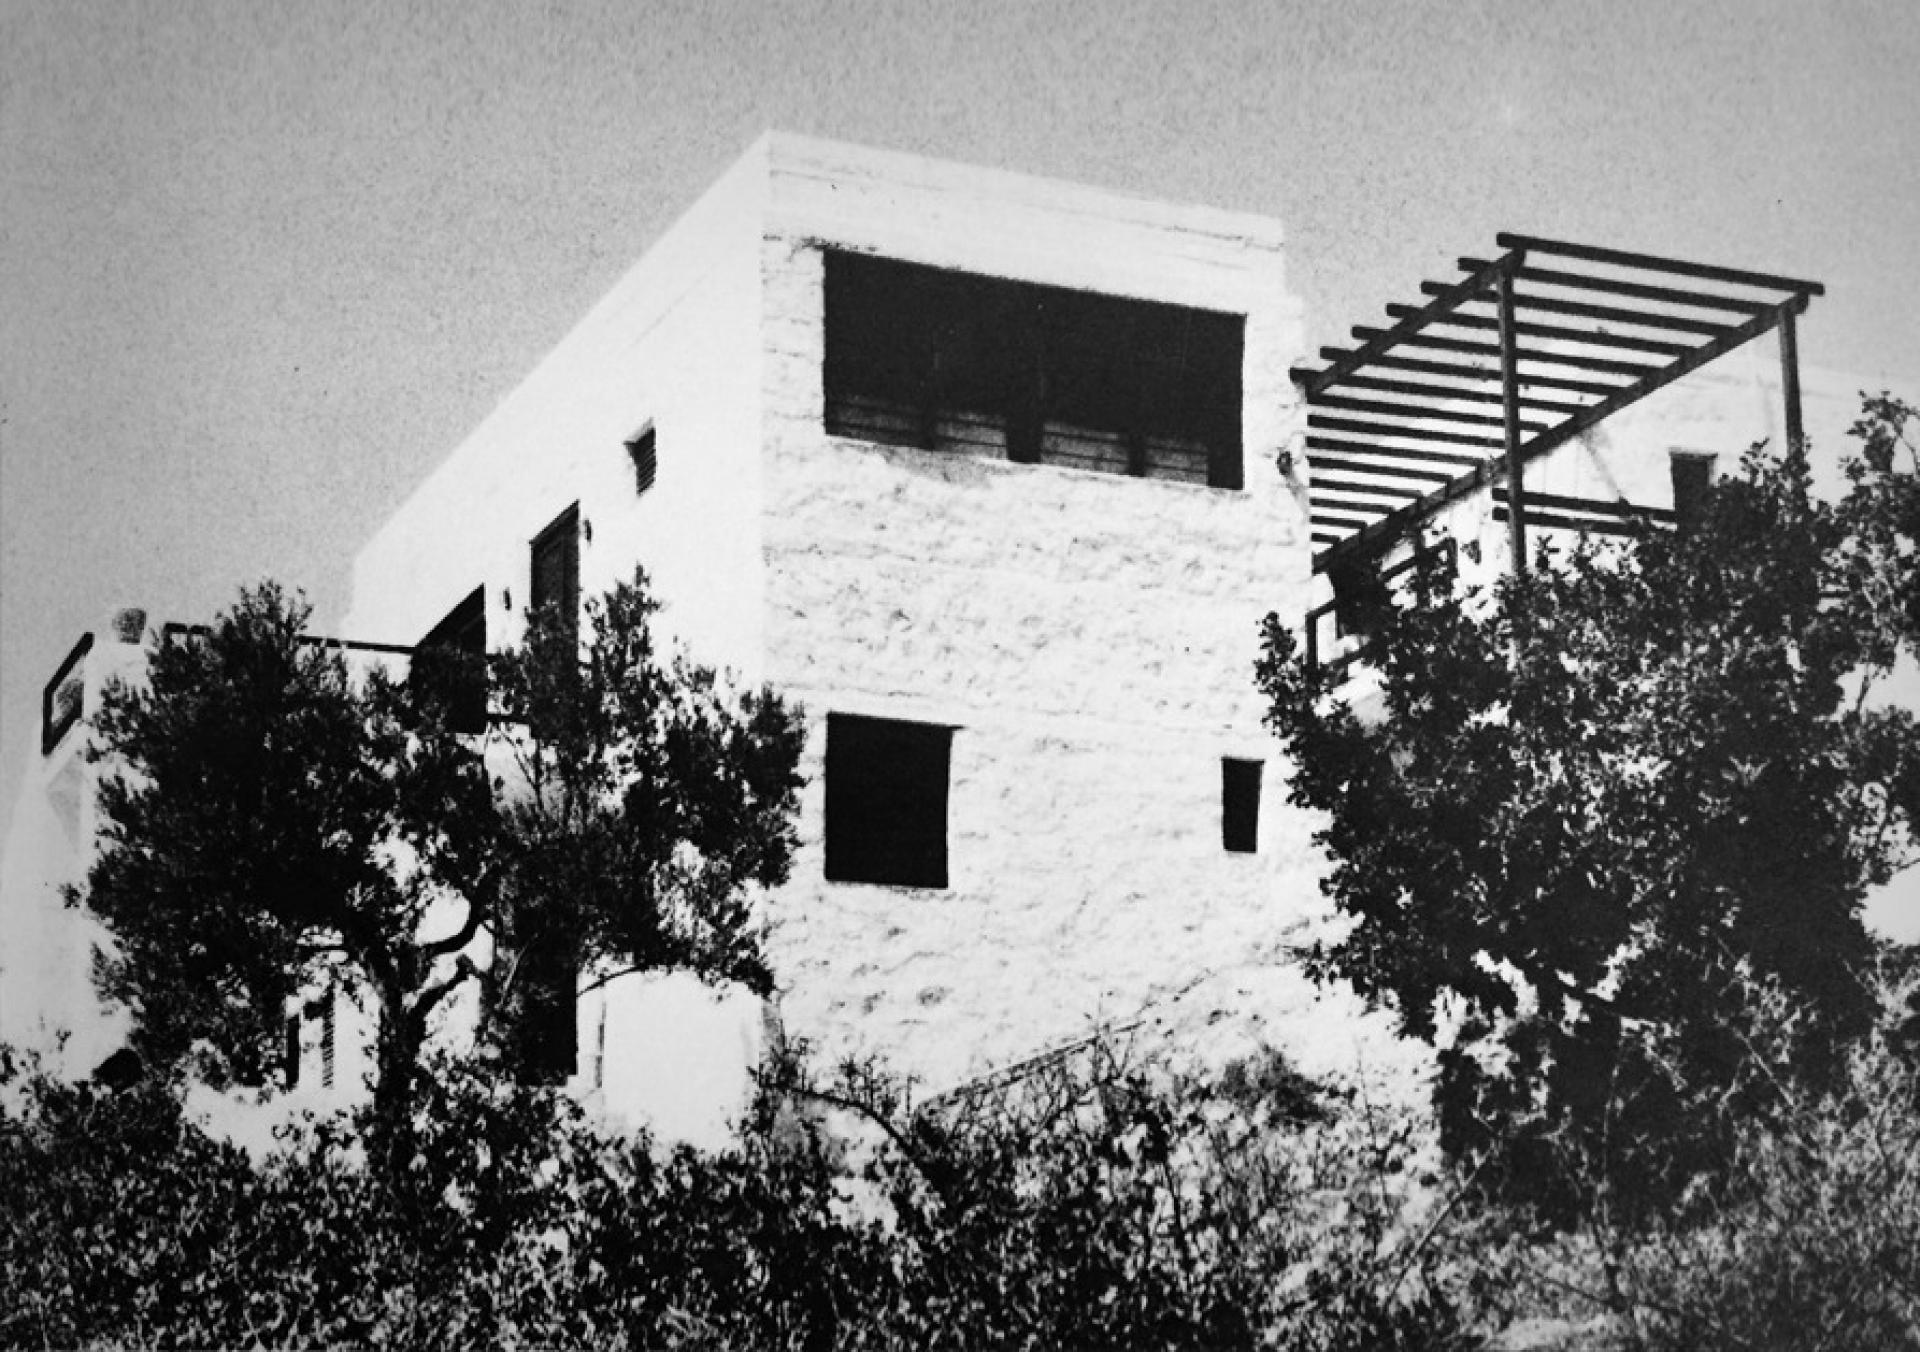 Porto Cheli House (1967) by Atelier 66 (Dimitri and Susana Atonakakis)